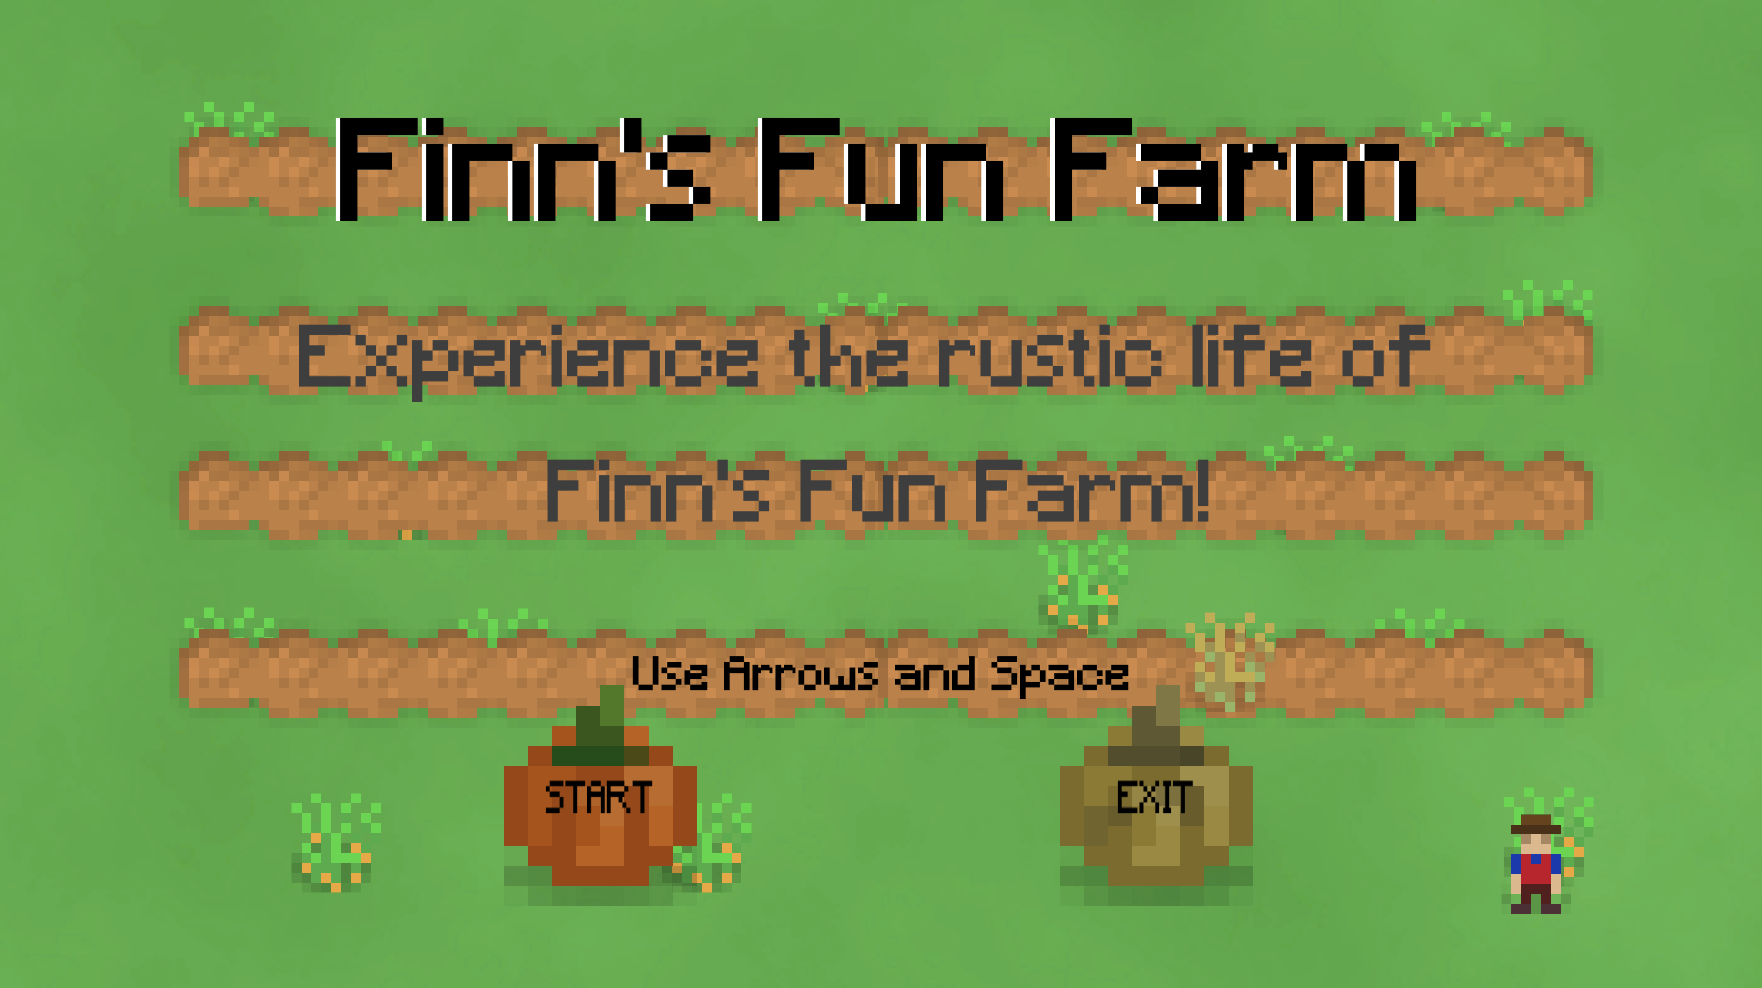 Finn's Fun Farm